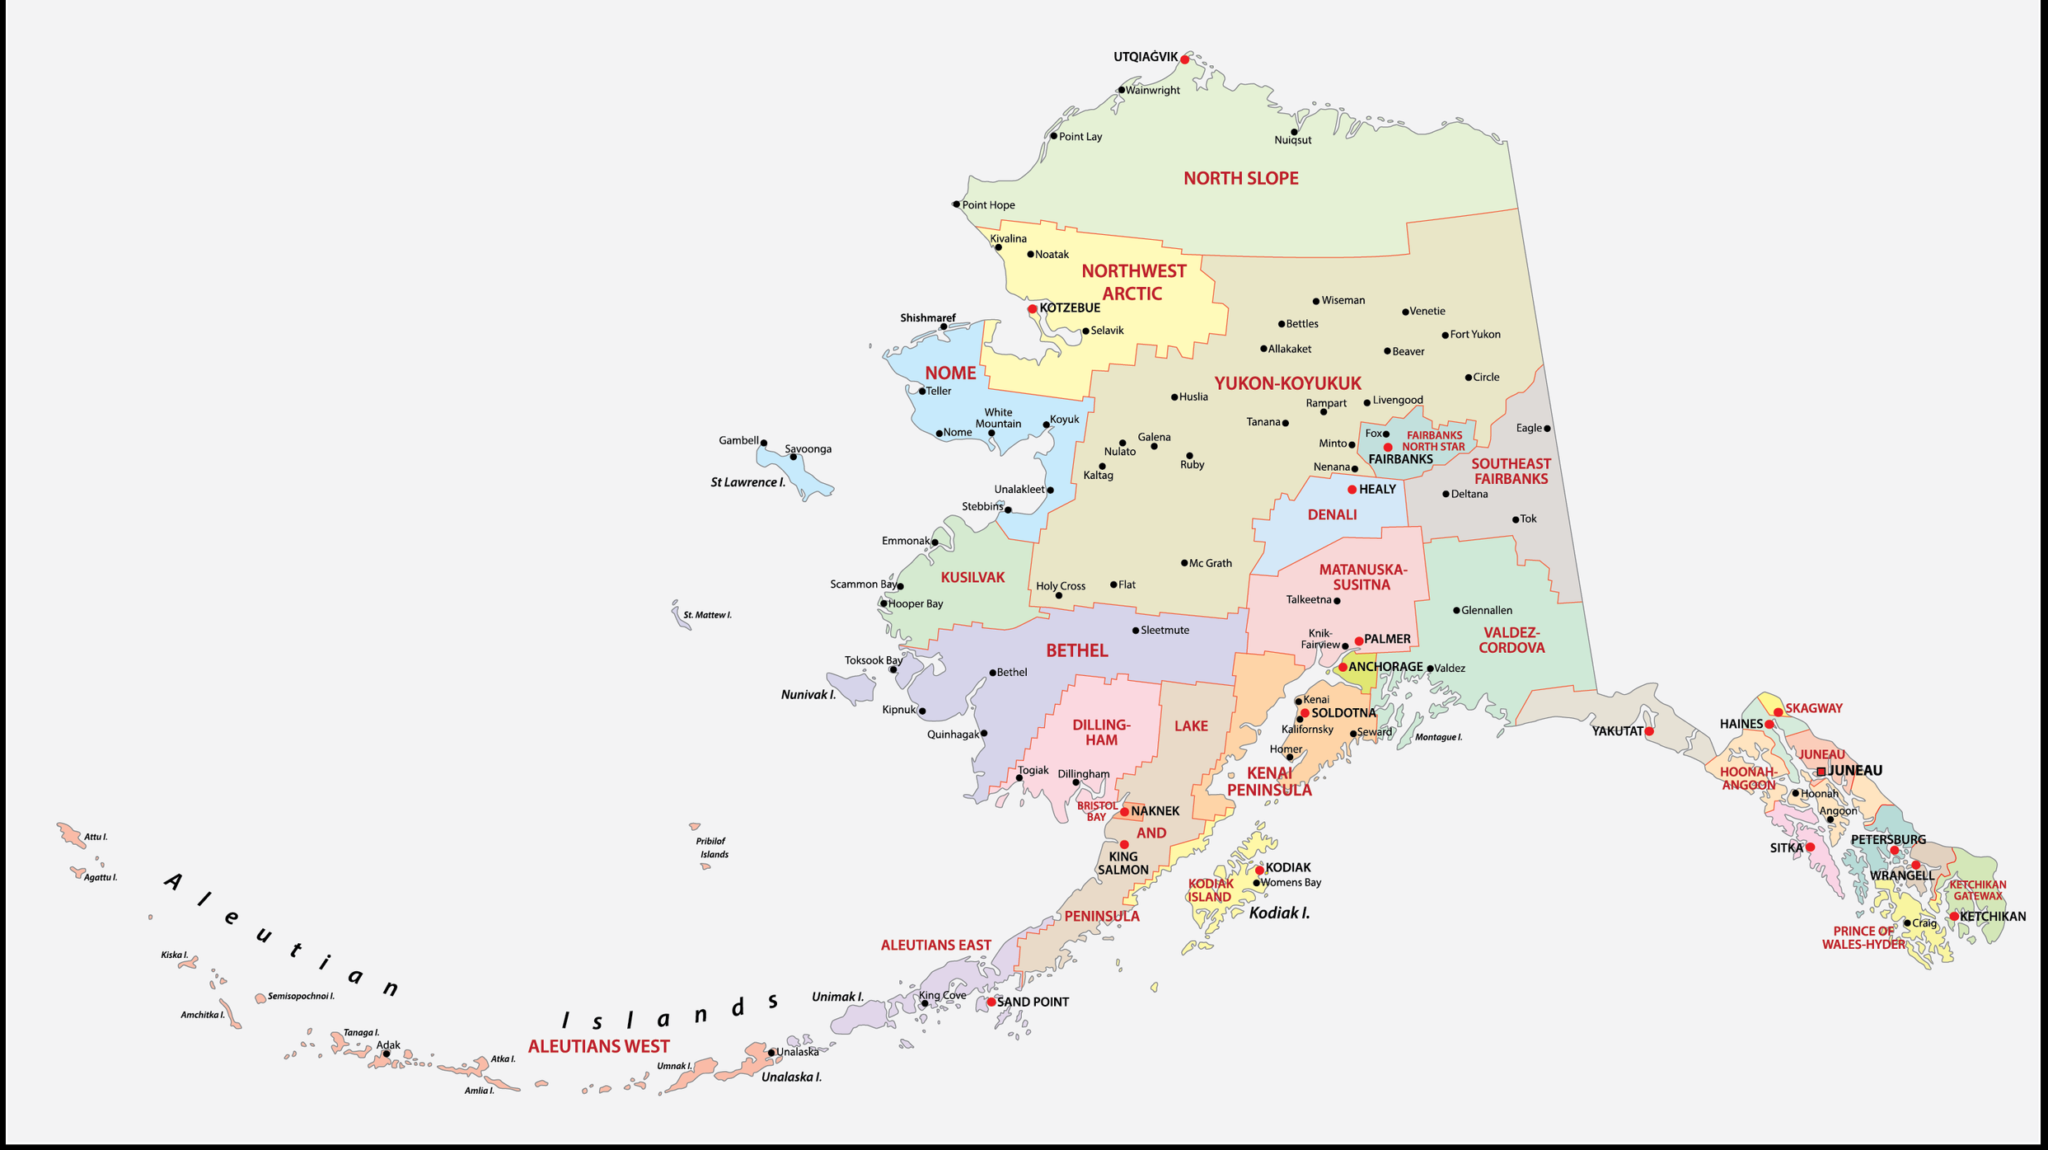 Alaska Borough Map Borough Maps With Cities 6333